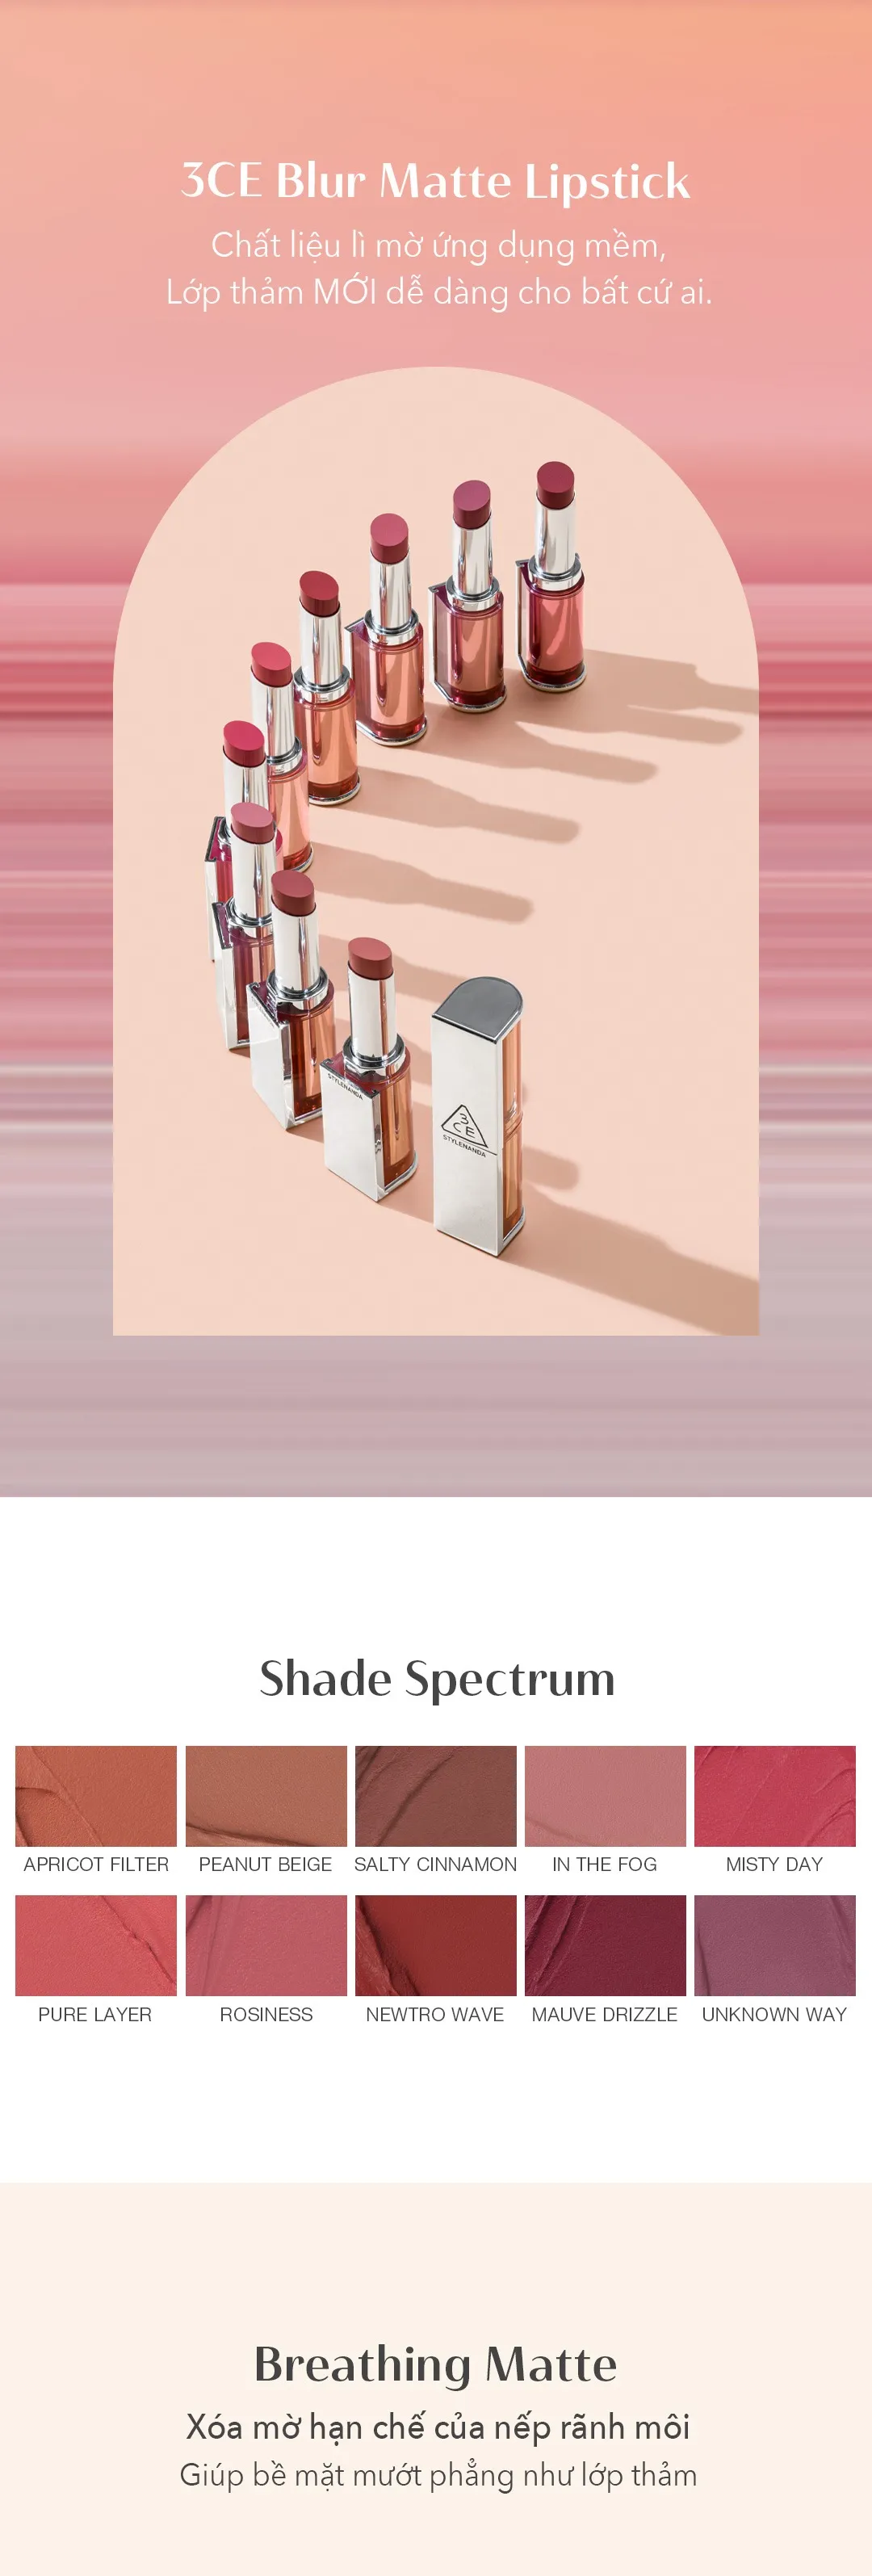 3CE Blur Matte Lipstick” – Bộ sưu tập son “mịn – mờ